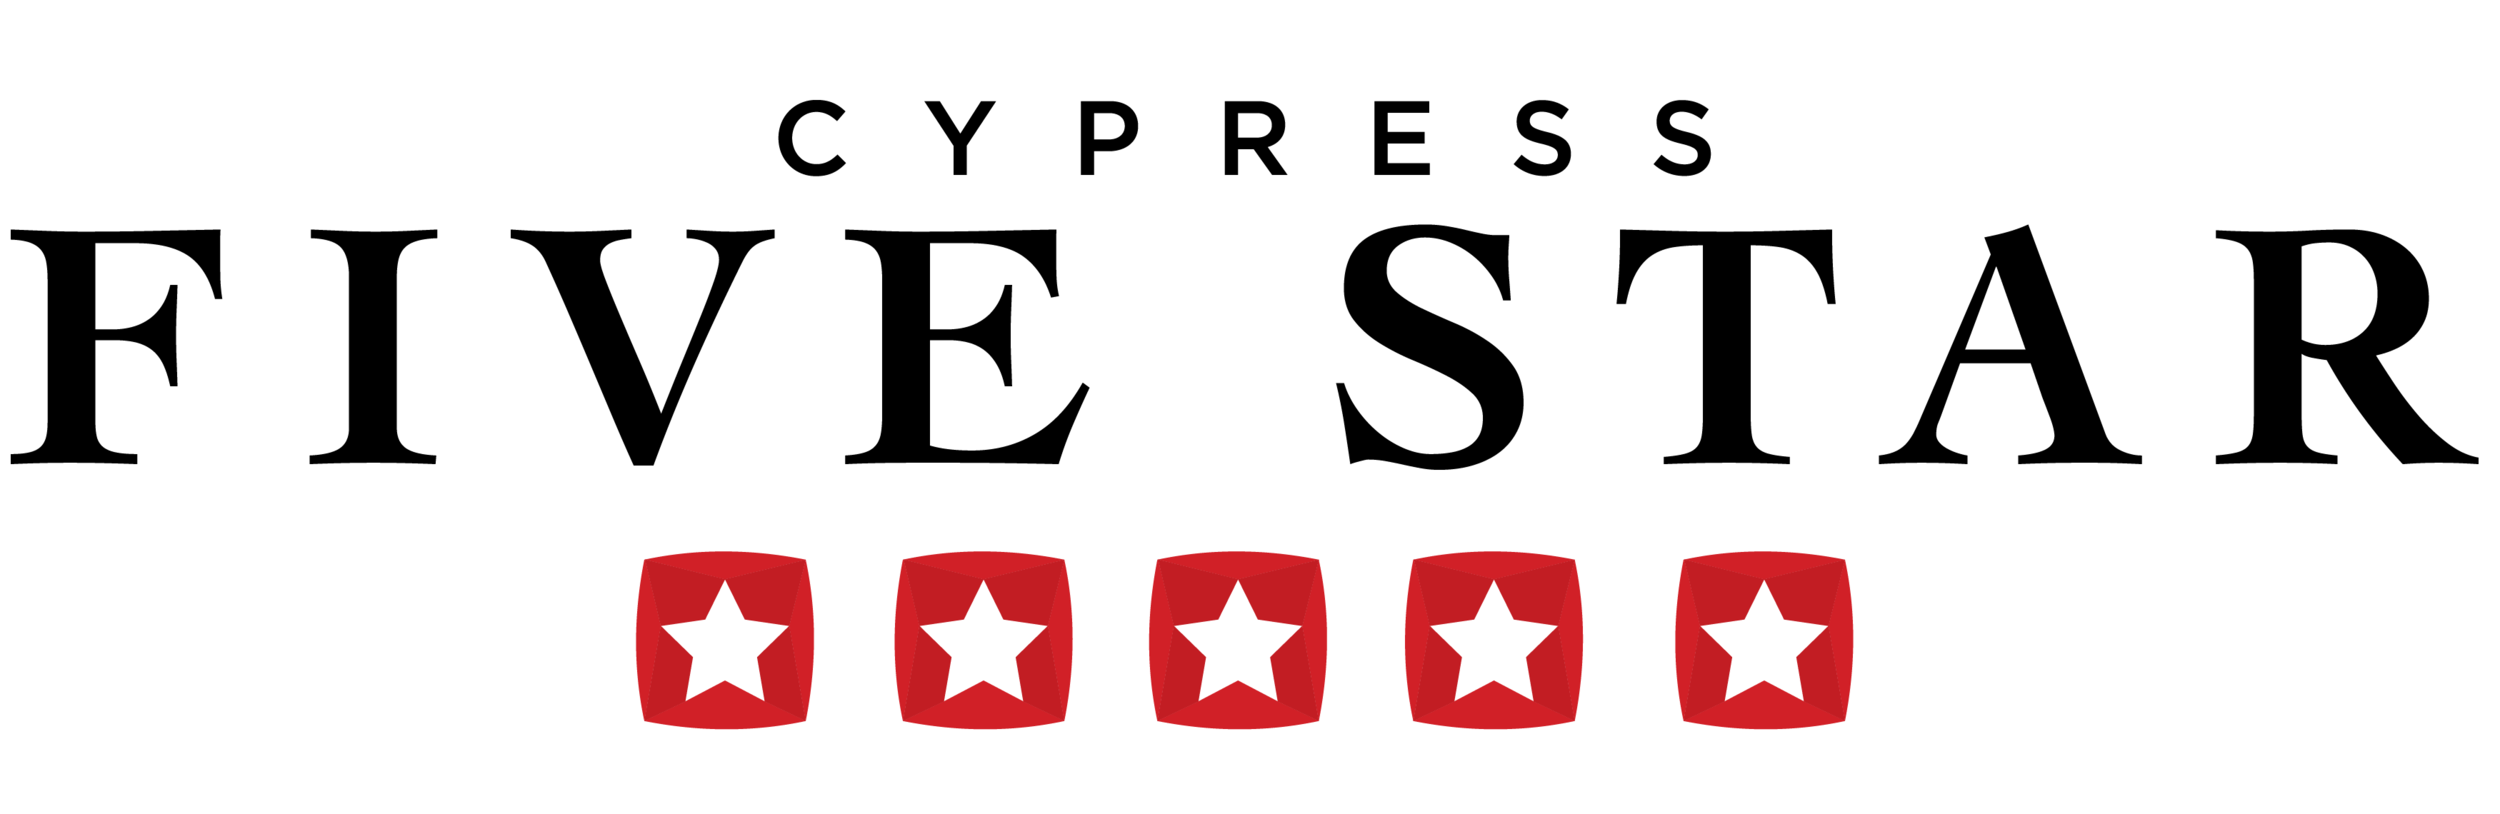 Cypress Five Star